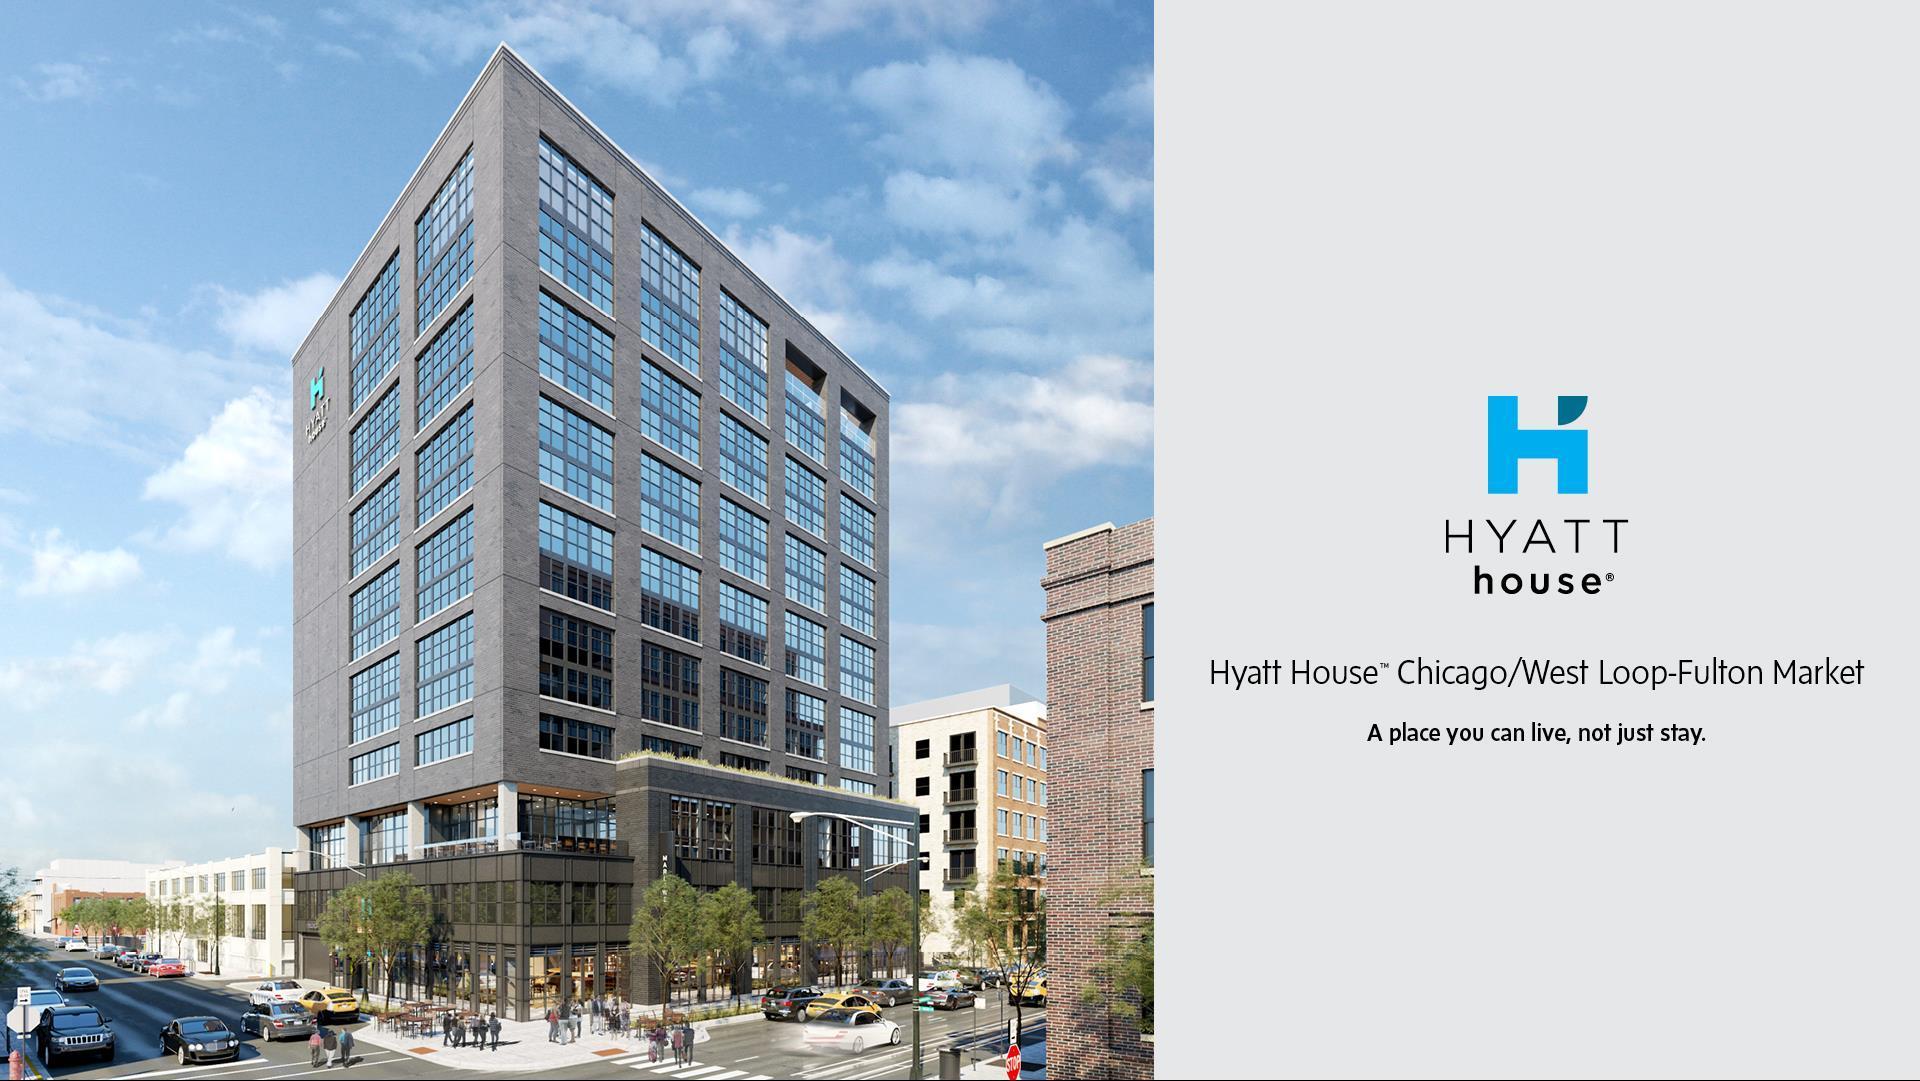 Hyatt House Chicago / West Loop-Fulton Market in Chicago, IL